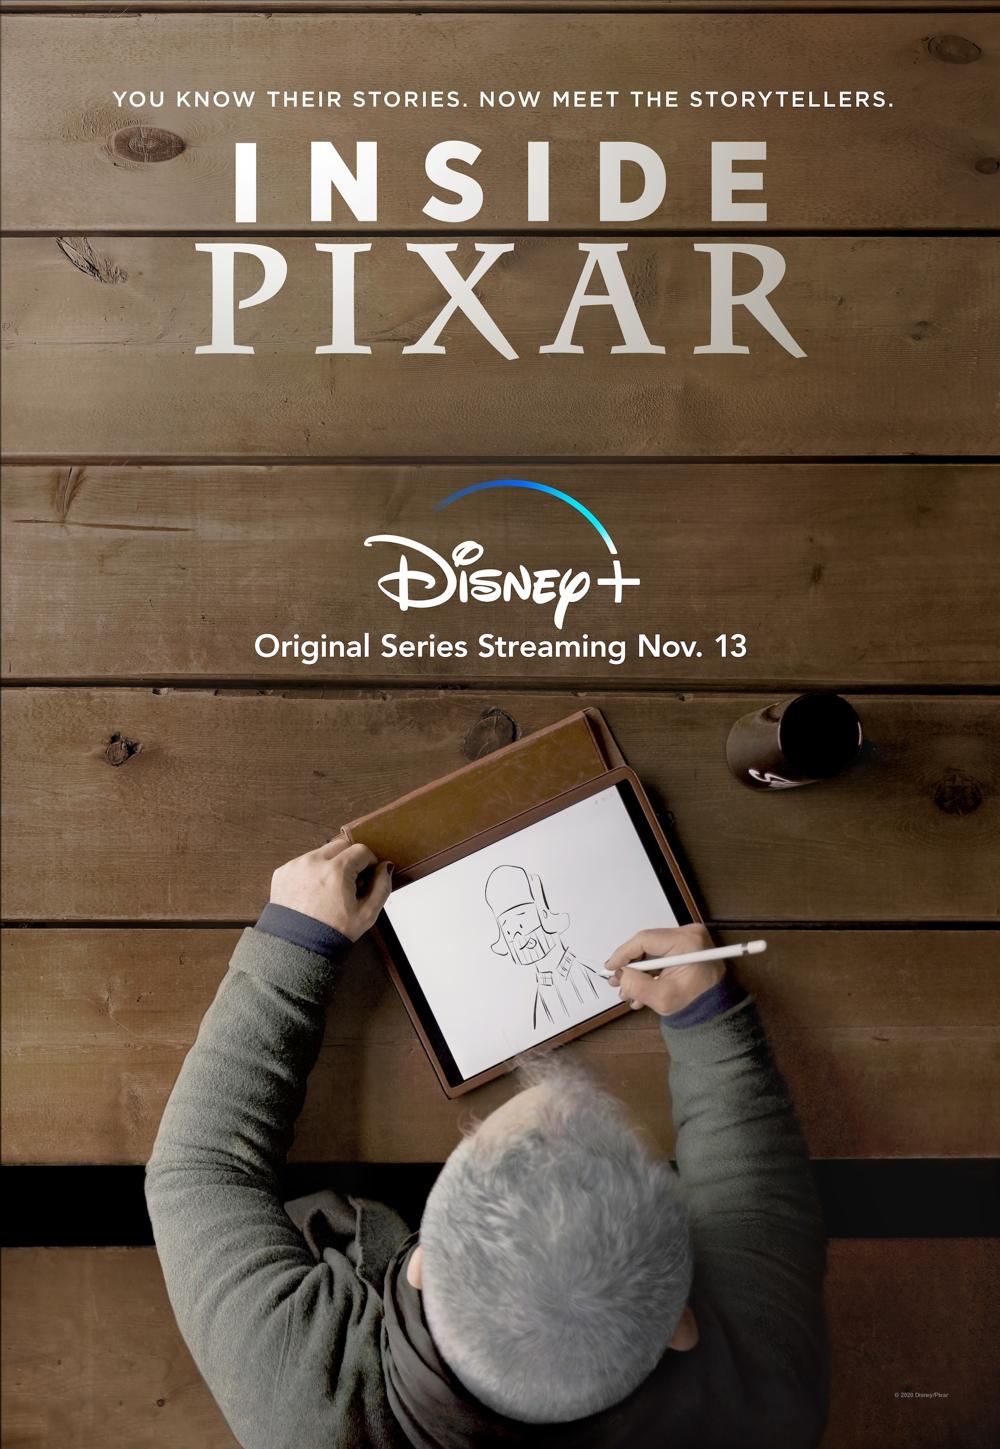 All'interno della Pixar